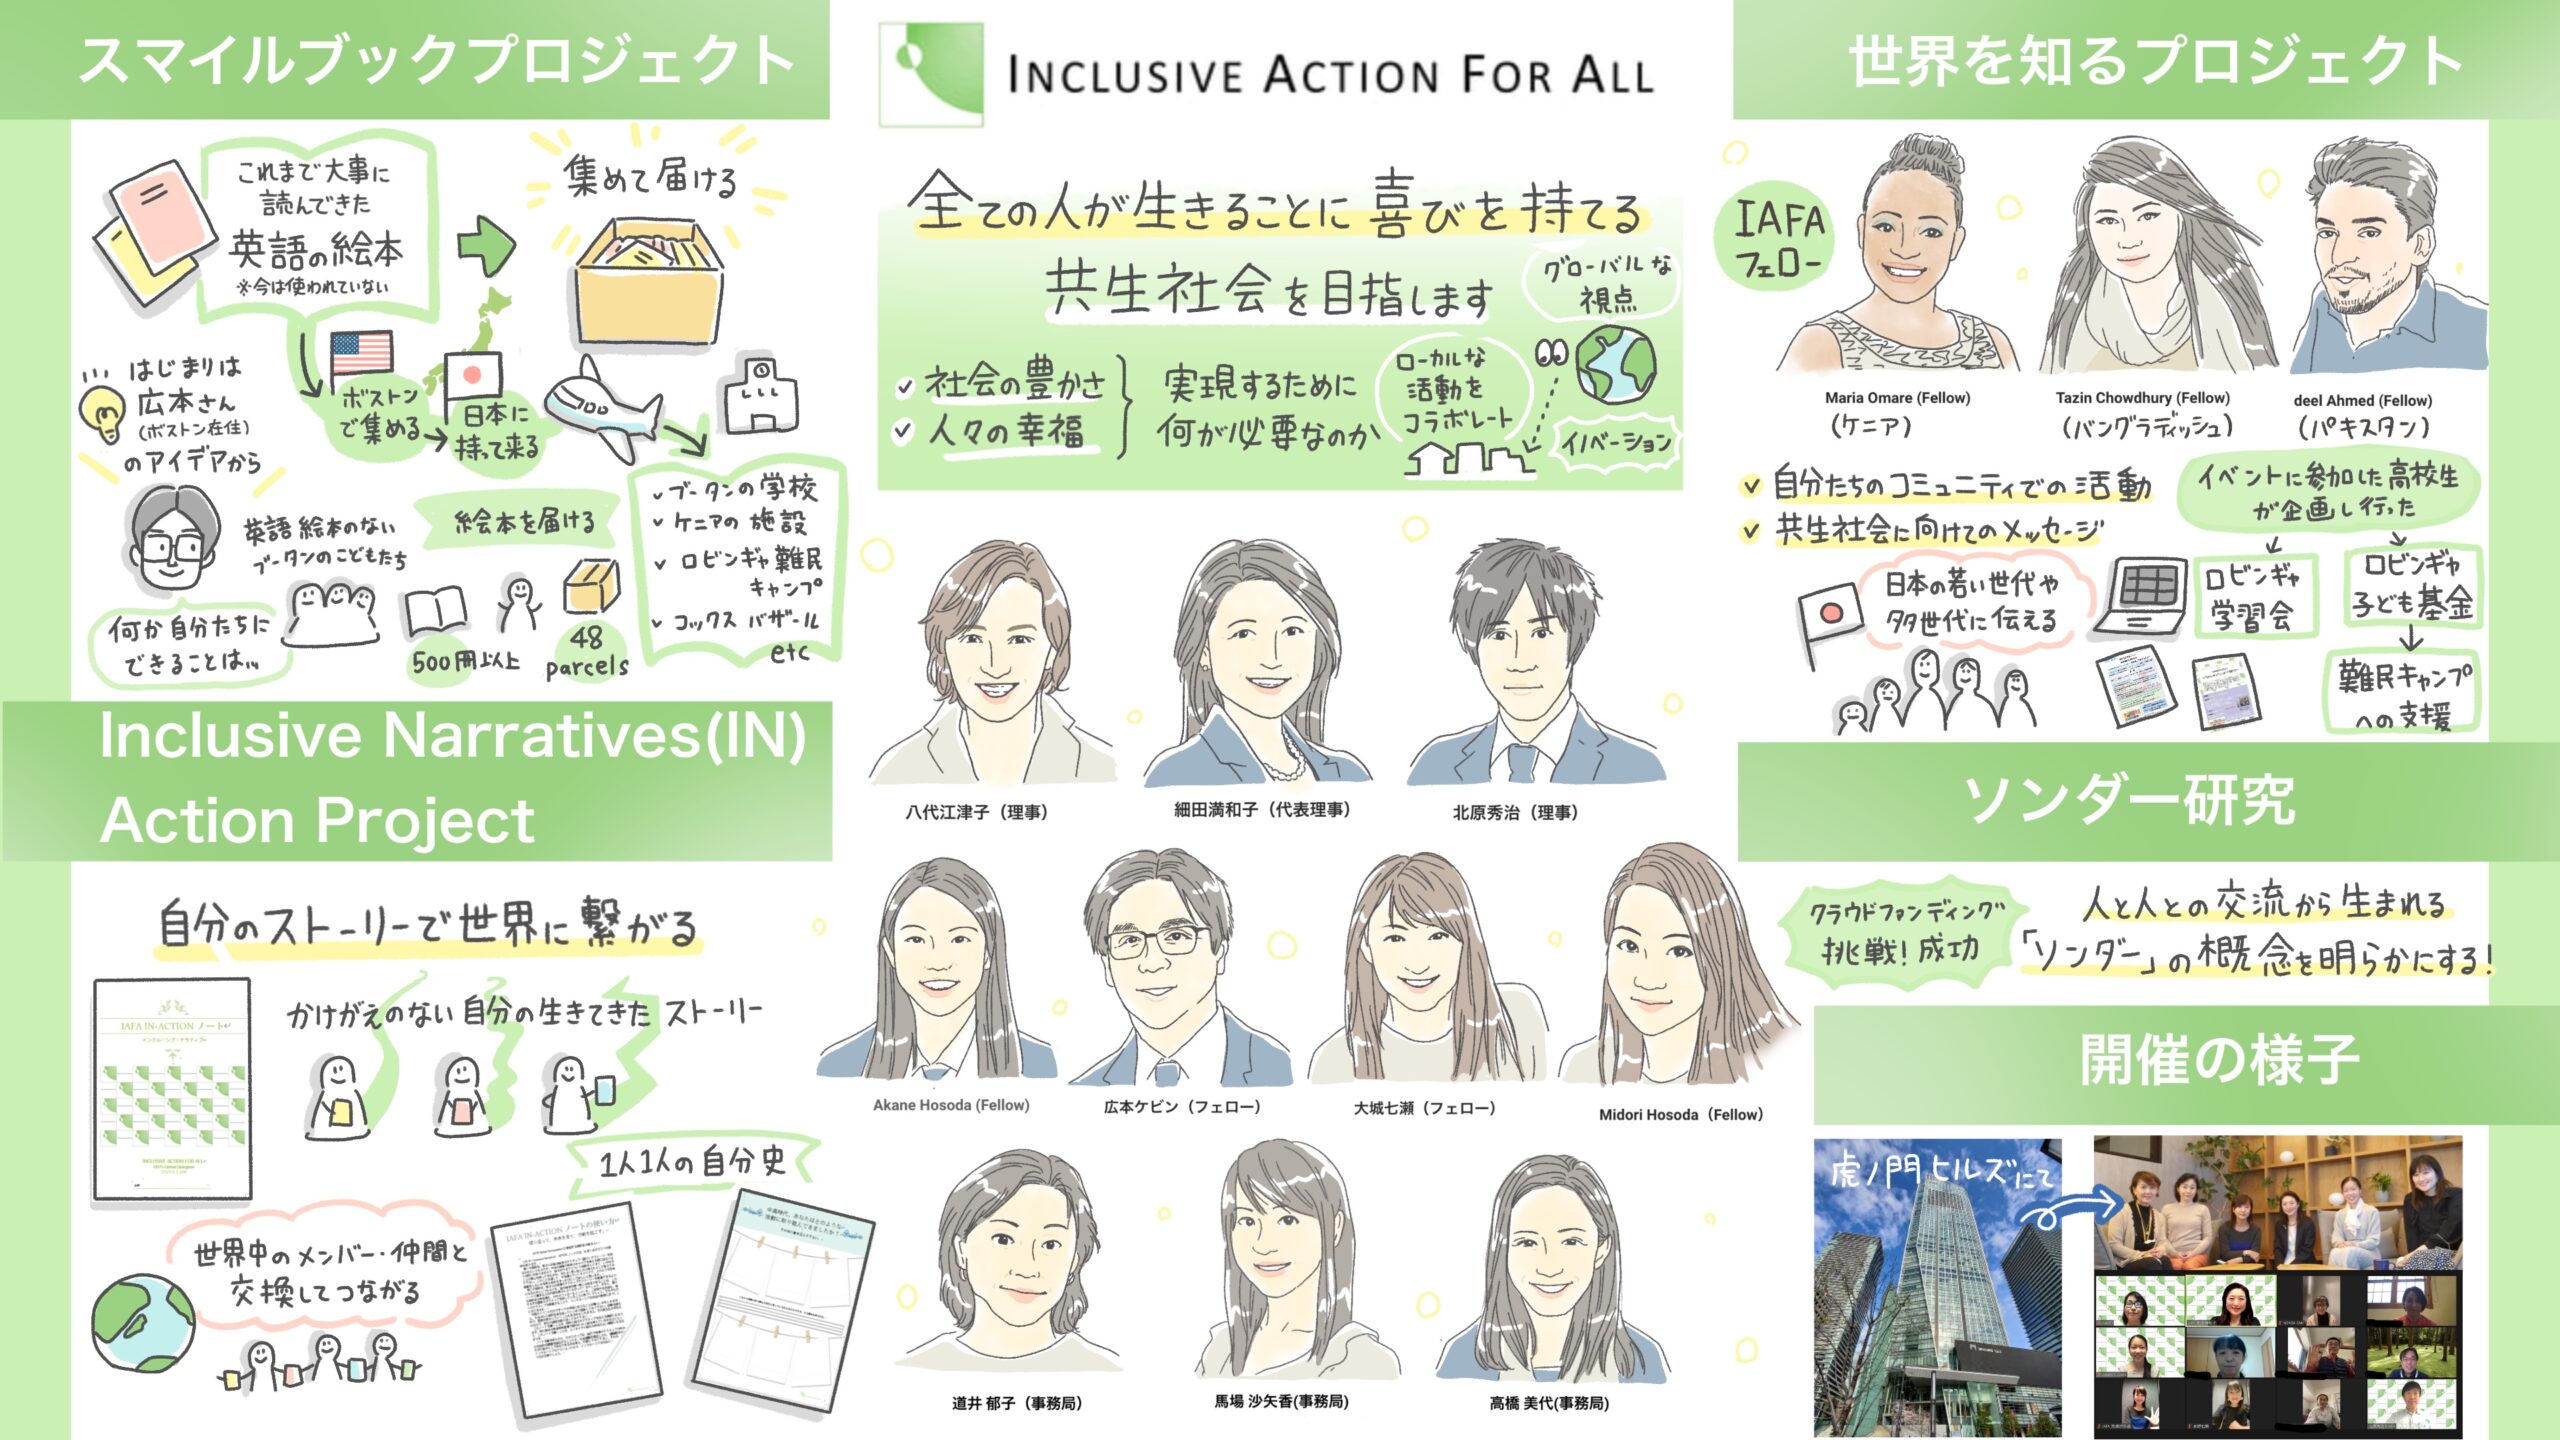 グラレコ/グラフィックレコーディング　Inclusive Action For All ソンダー研究報告会+ワークショップ